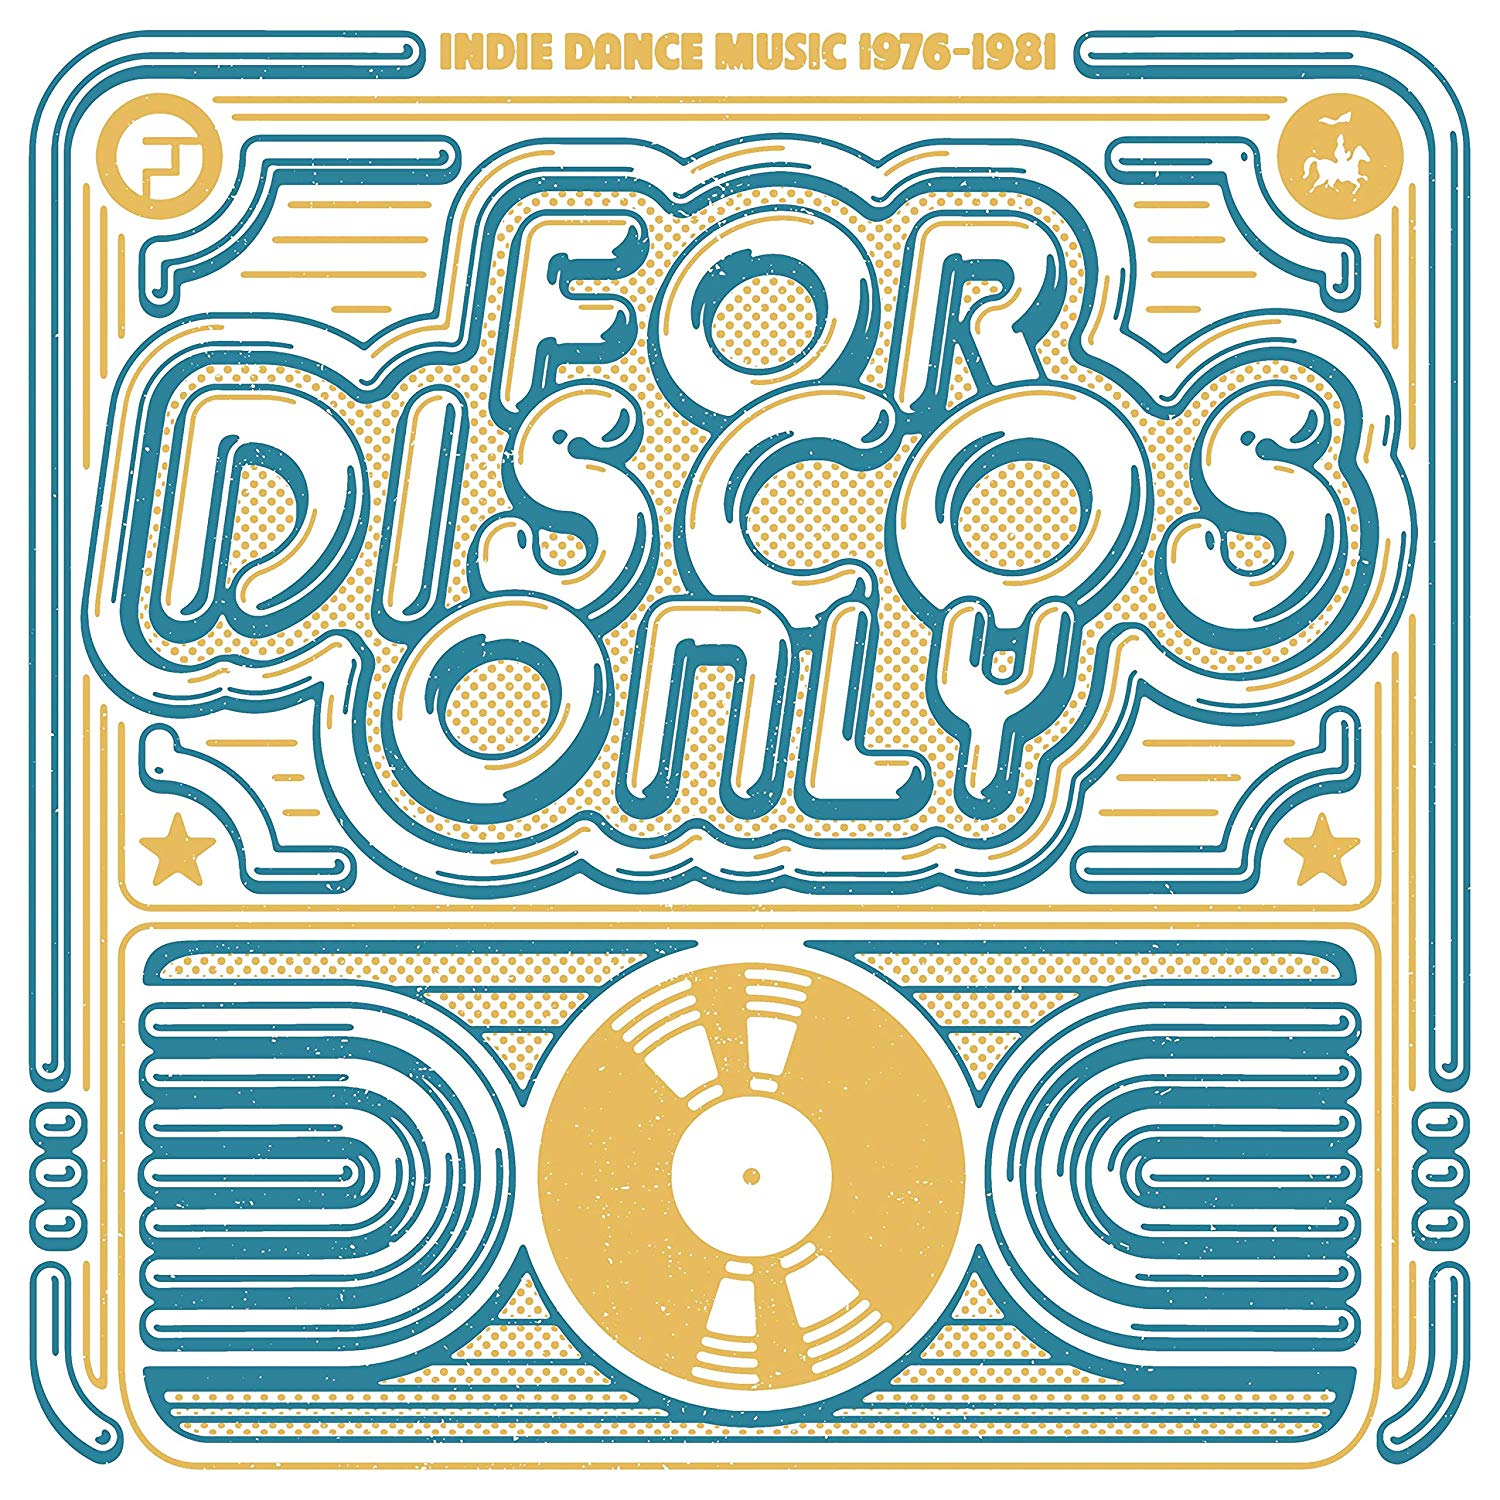 Audio Cd For Disco's Only (Indie Dance Music From Fantasy & Vanguard Records 1976â€“1981) / Various (3 Cd) NUOVO SIGILLATO, EDIZIONE DEL 12/10/2018 SUBITO DISPONIBILE